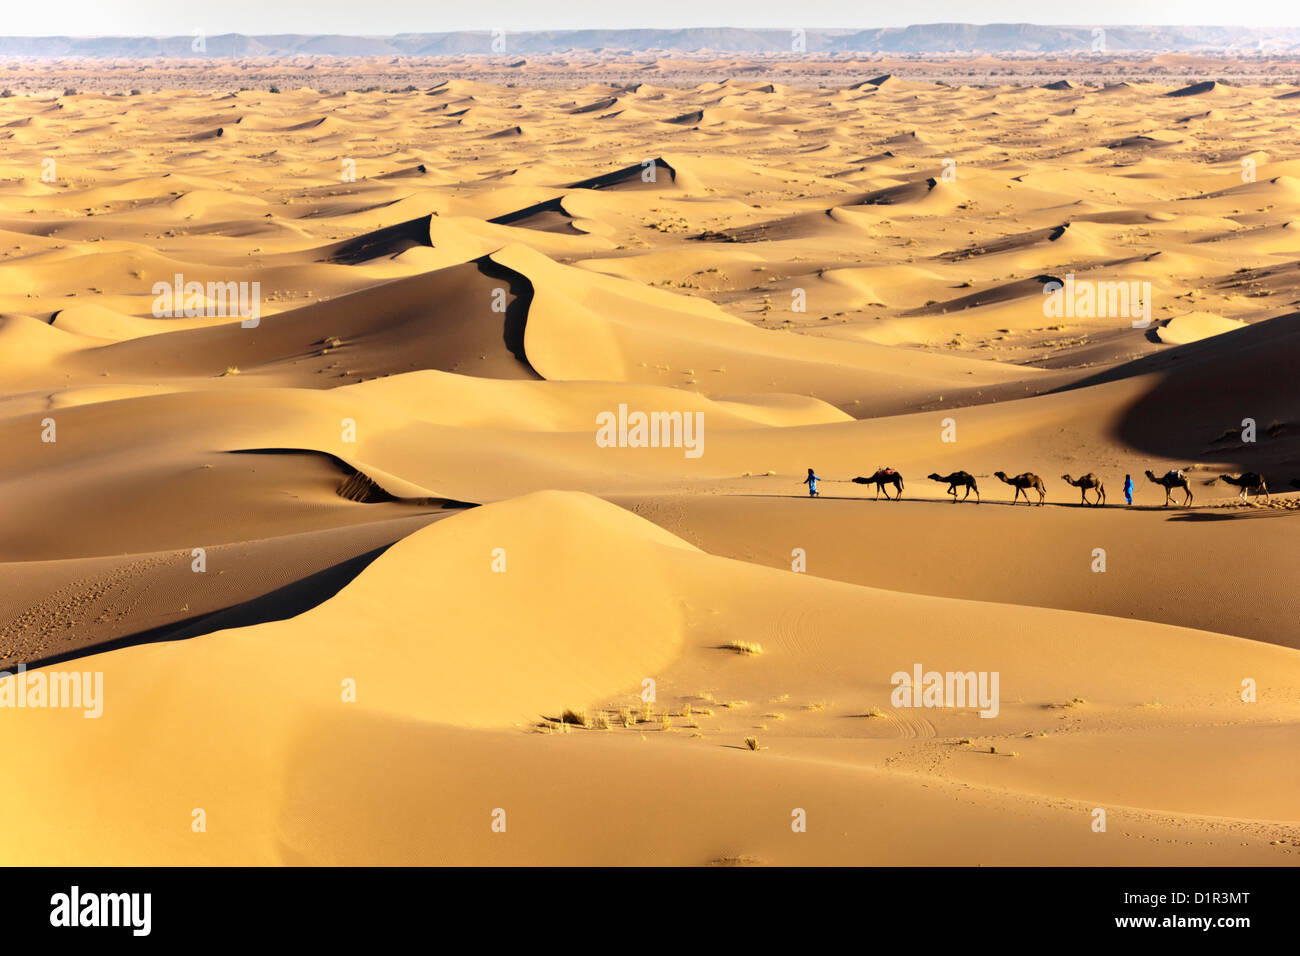 Le Maroc, M'Hamid, Erg Chigaga dunes de sable. Désert du Sahara. Caravane de chameaux et chameliers. Banque D'Images